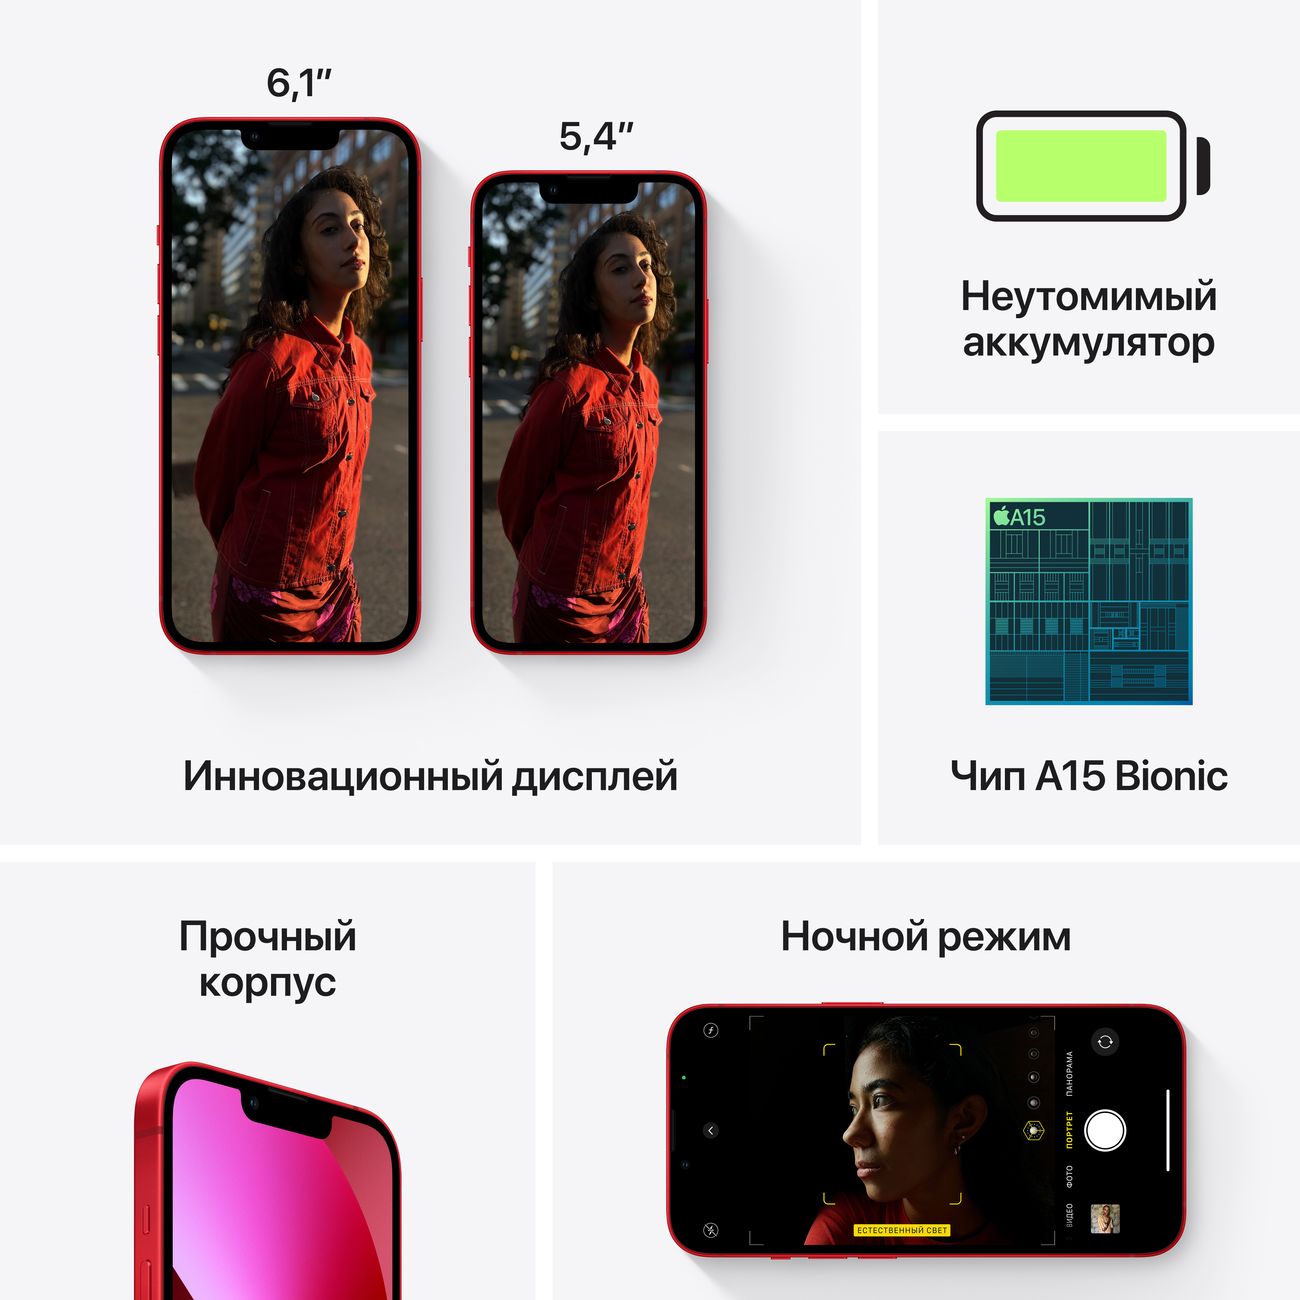 Купить смартфон apple iphone 13 mini 128gb starlight Apple iPhone 13 mini в официальном магазине Apple, Samsung, Xiaomi. iPixel.ru Купить, заказ, кредит, рассрочка, отзывы,  характеристики, цена,  фотографии, в подарок.